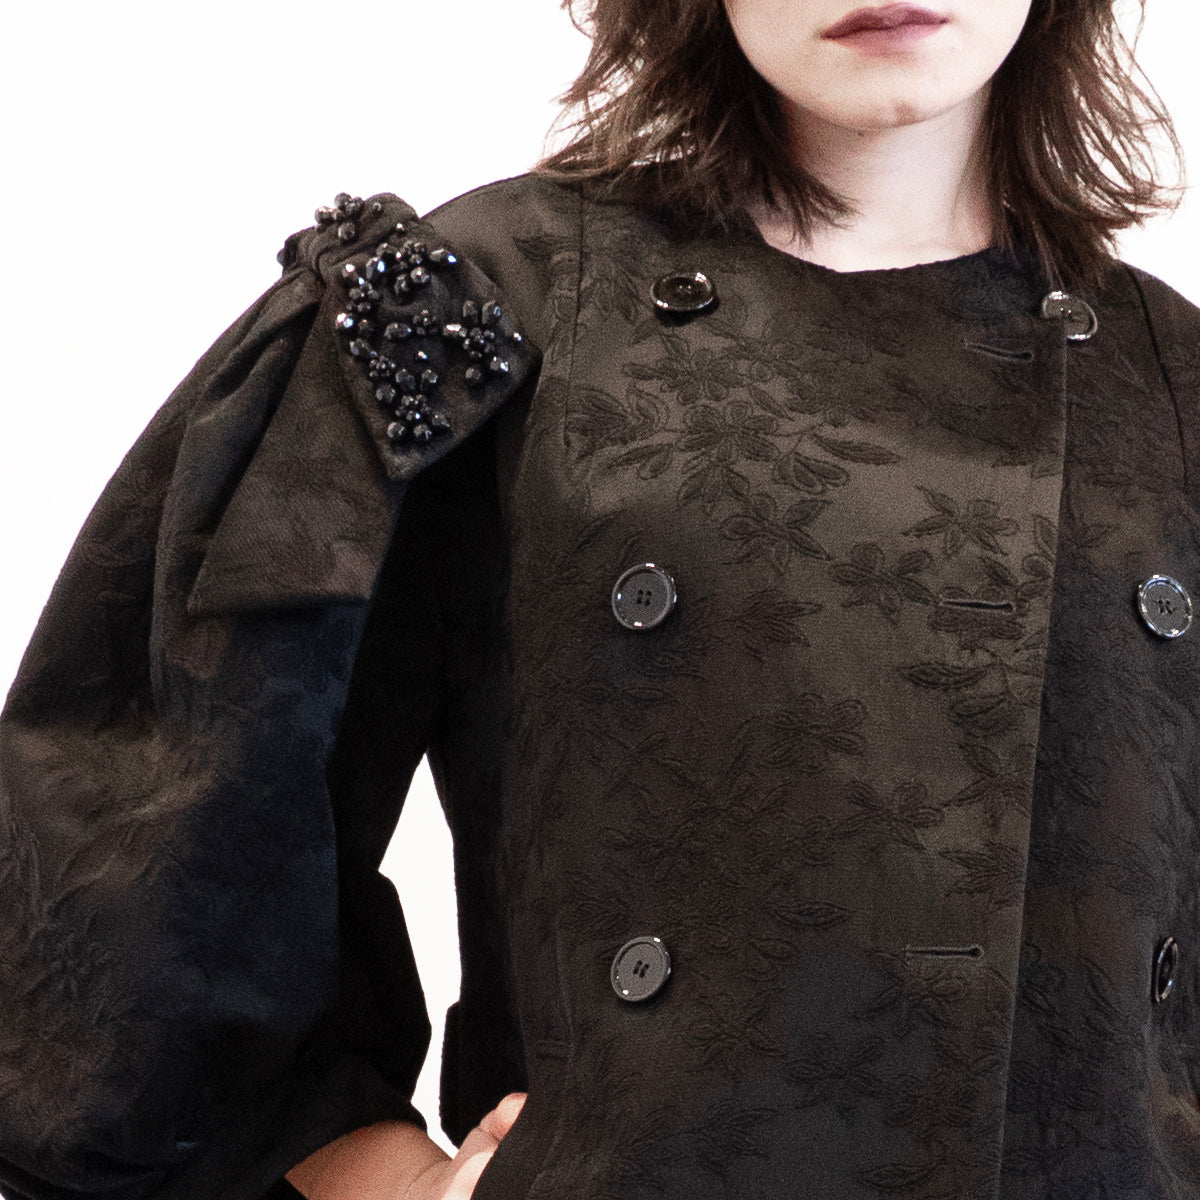 Simone Rocha Embellished Coat